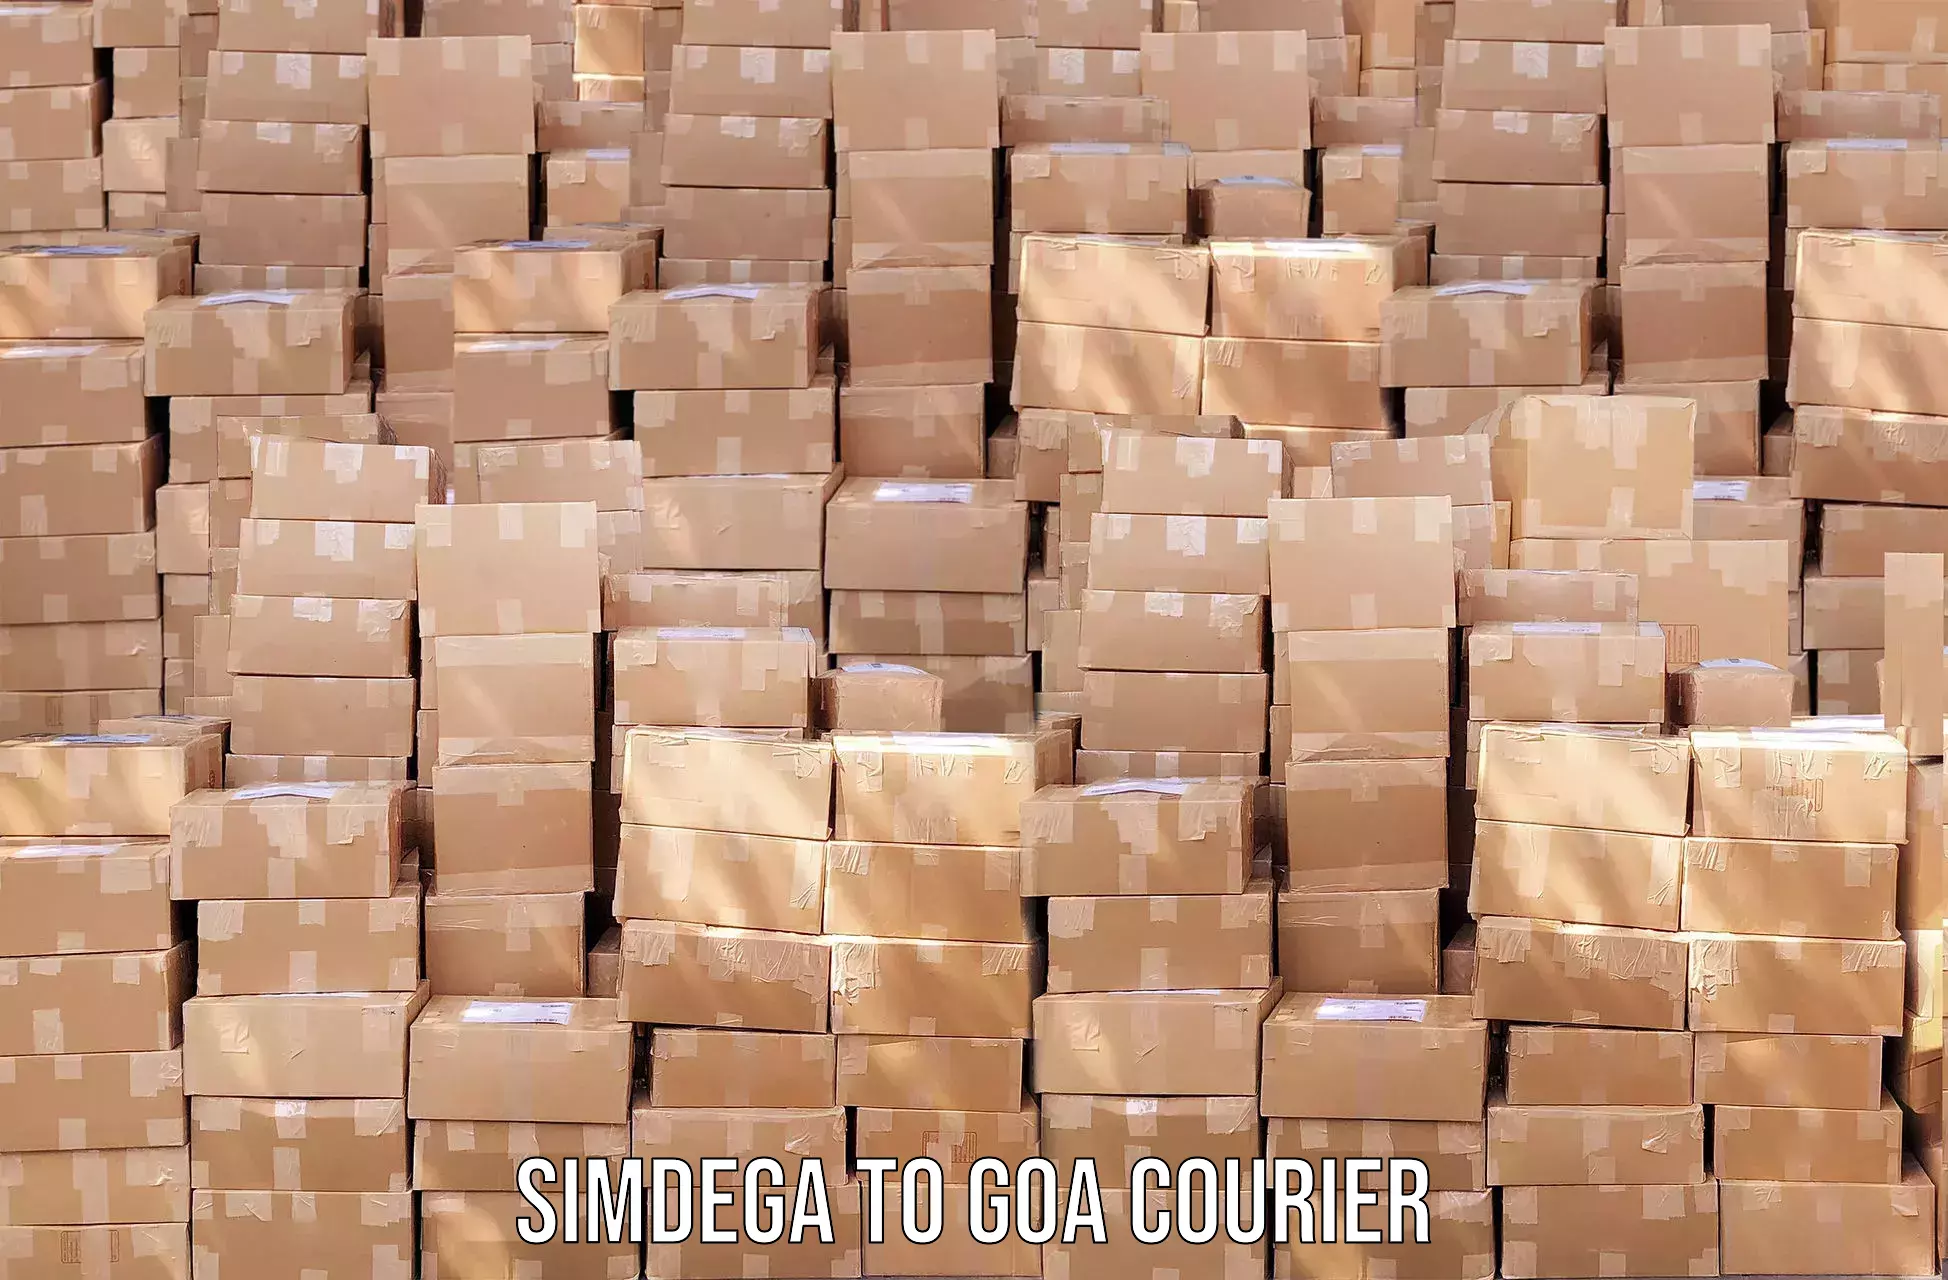 Bulk order courier Simdega to Mormugao Port